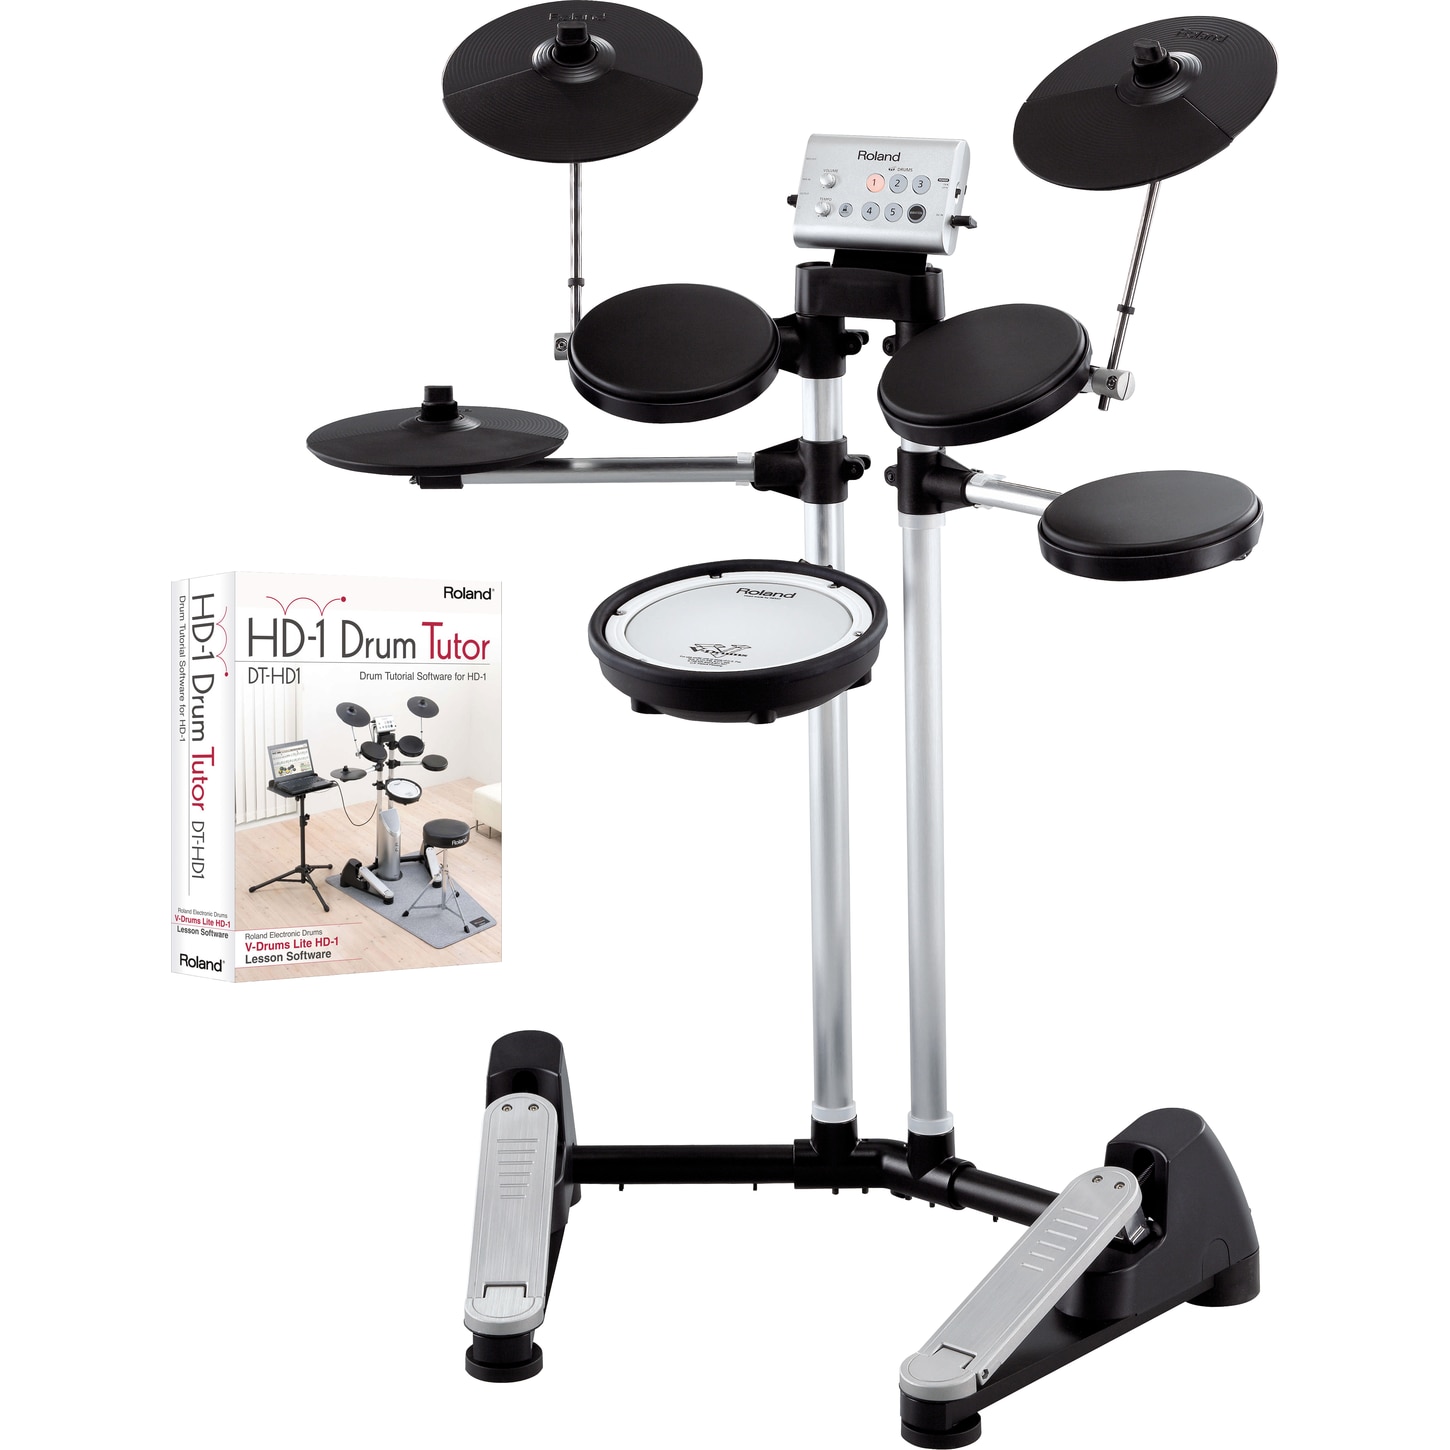 DT-1 V-Drums Tutor Software